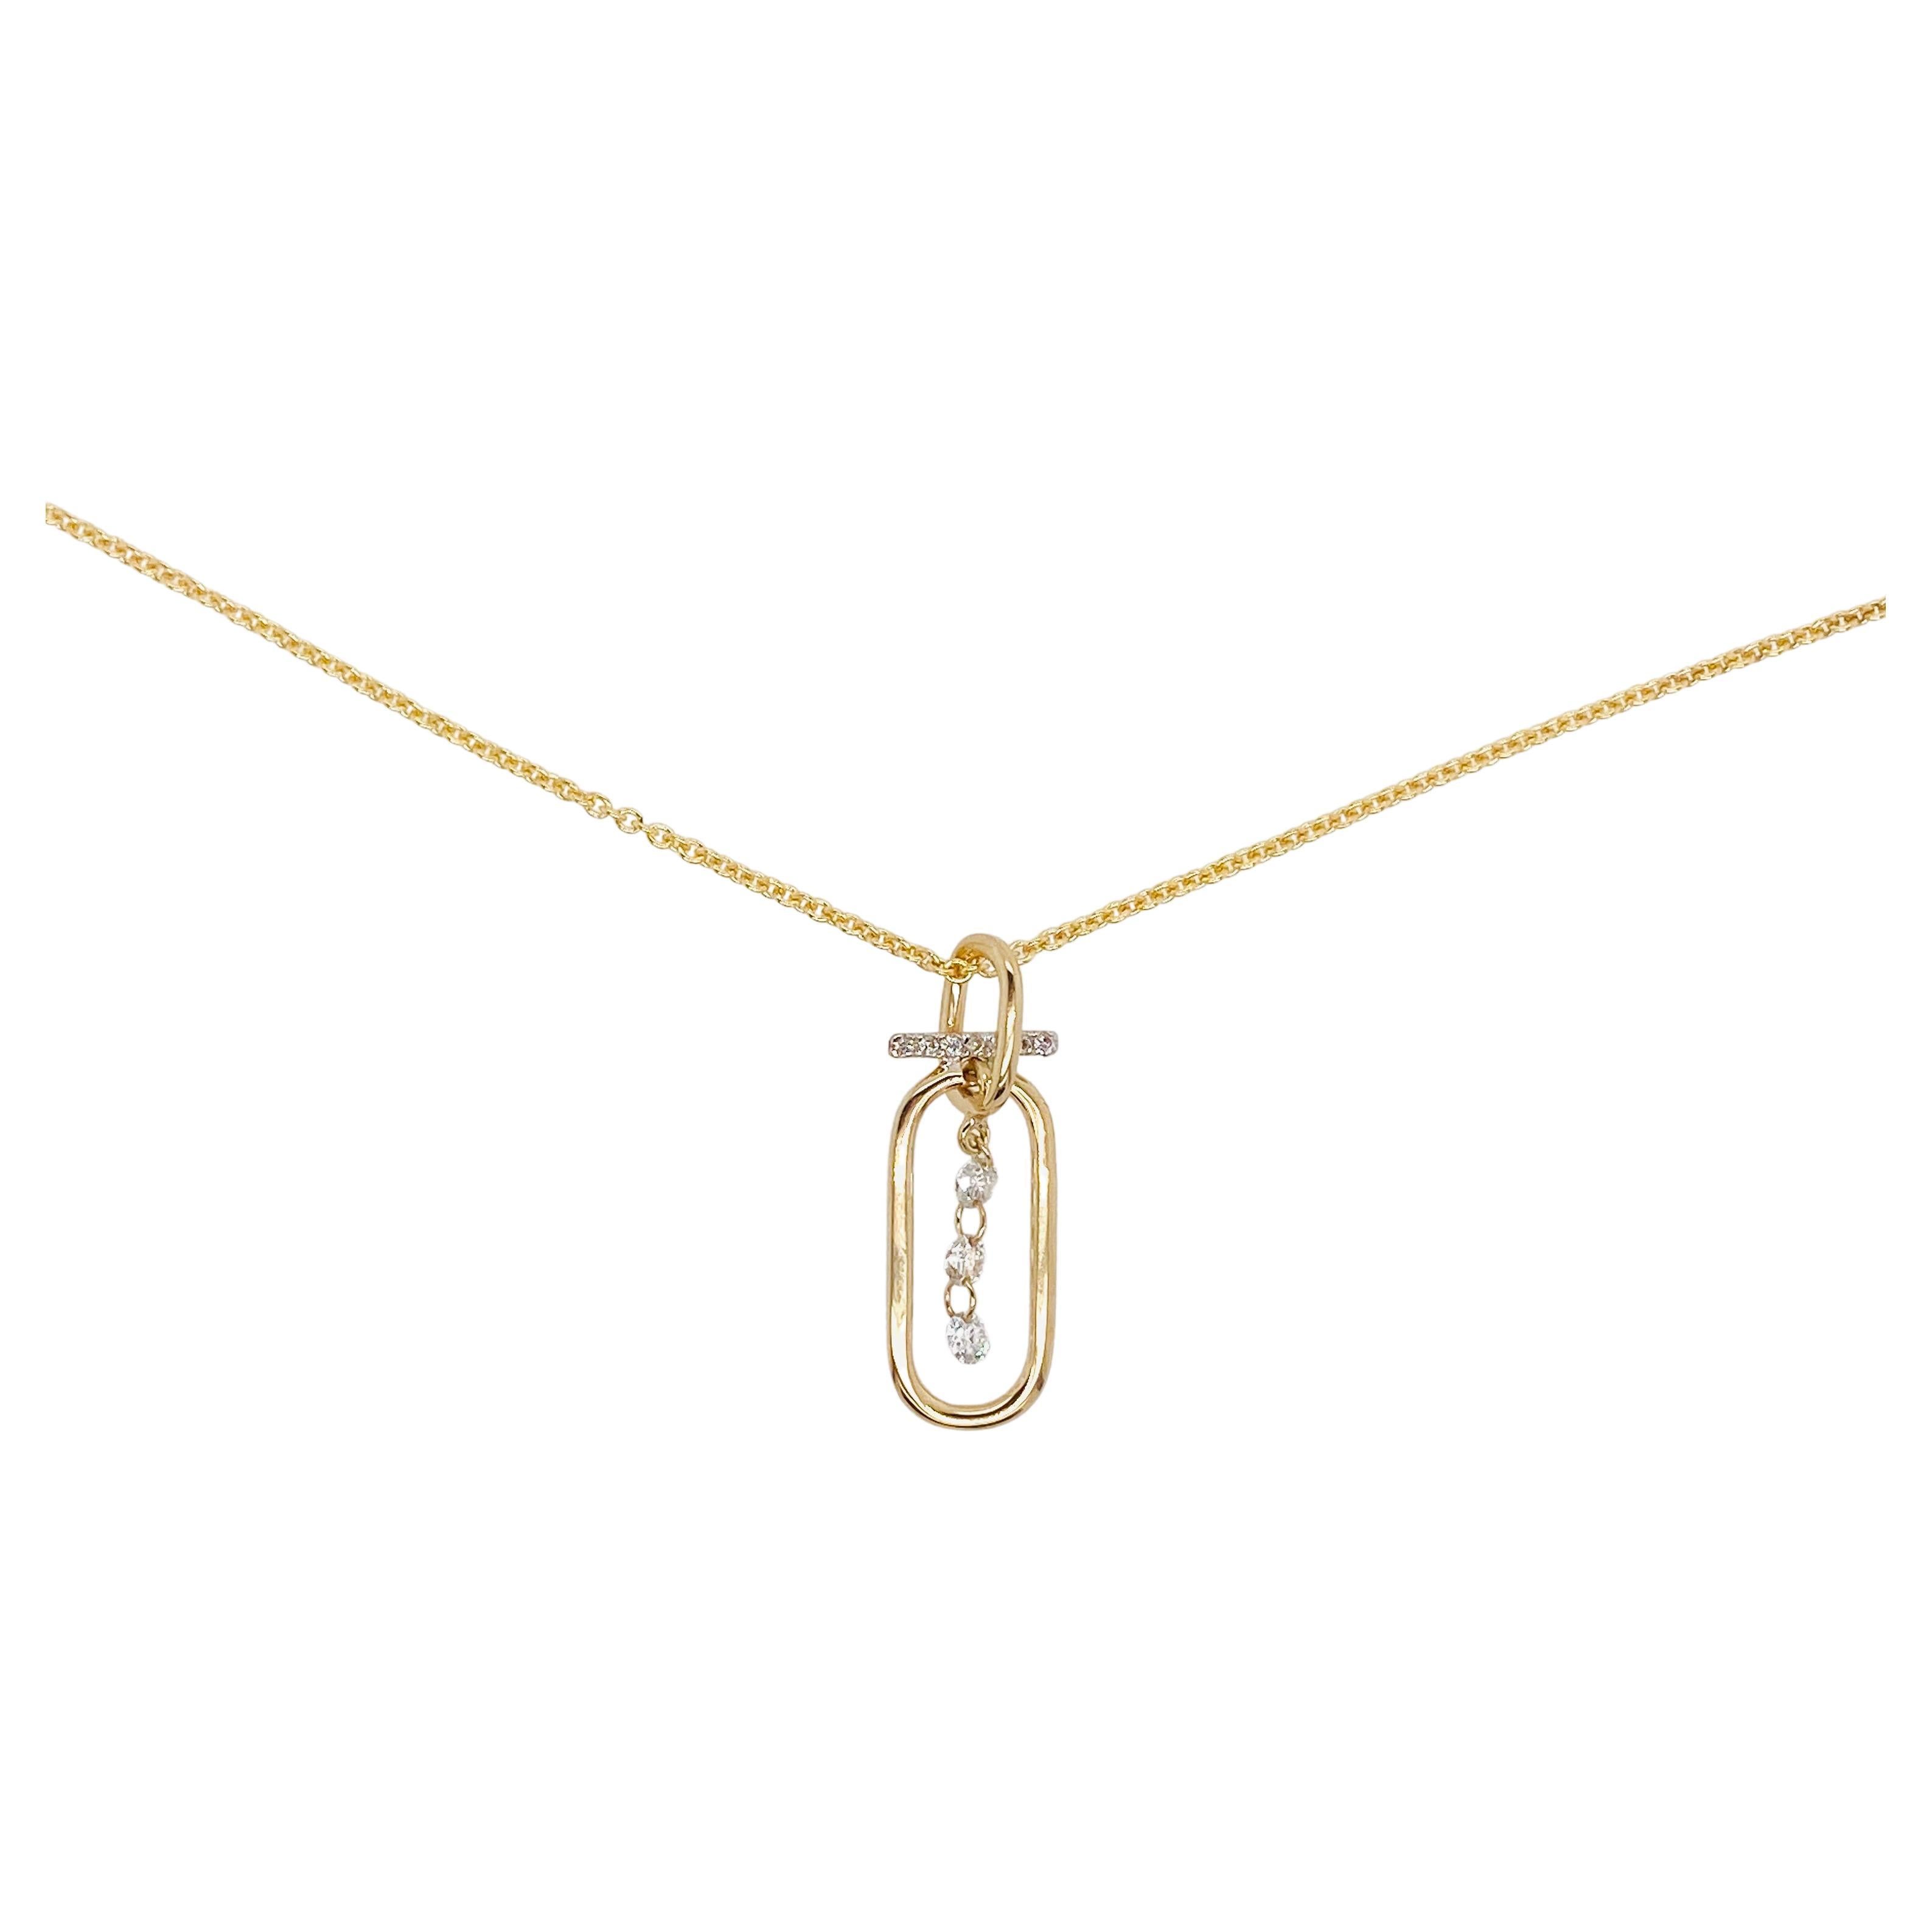 Halskette mit durchbrochenem Diamant-Papierclip-Bar-Anhänger 0,20 Karat, 14K Gelbgold